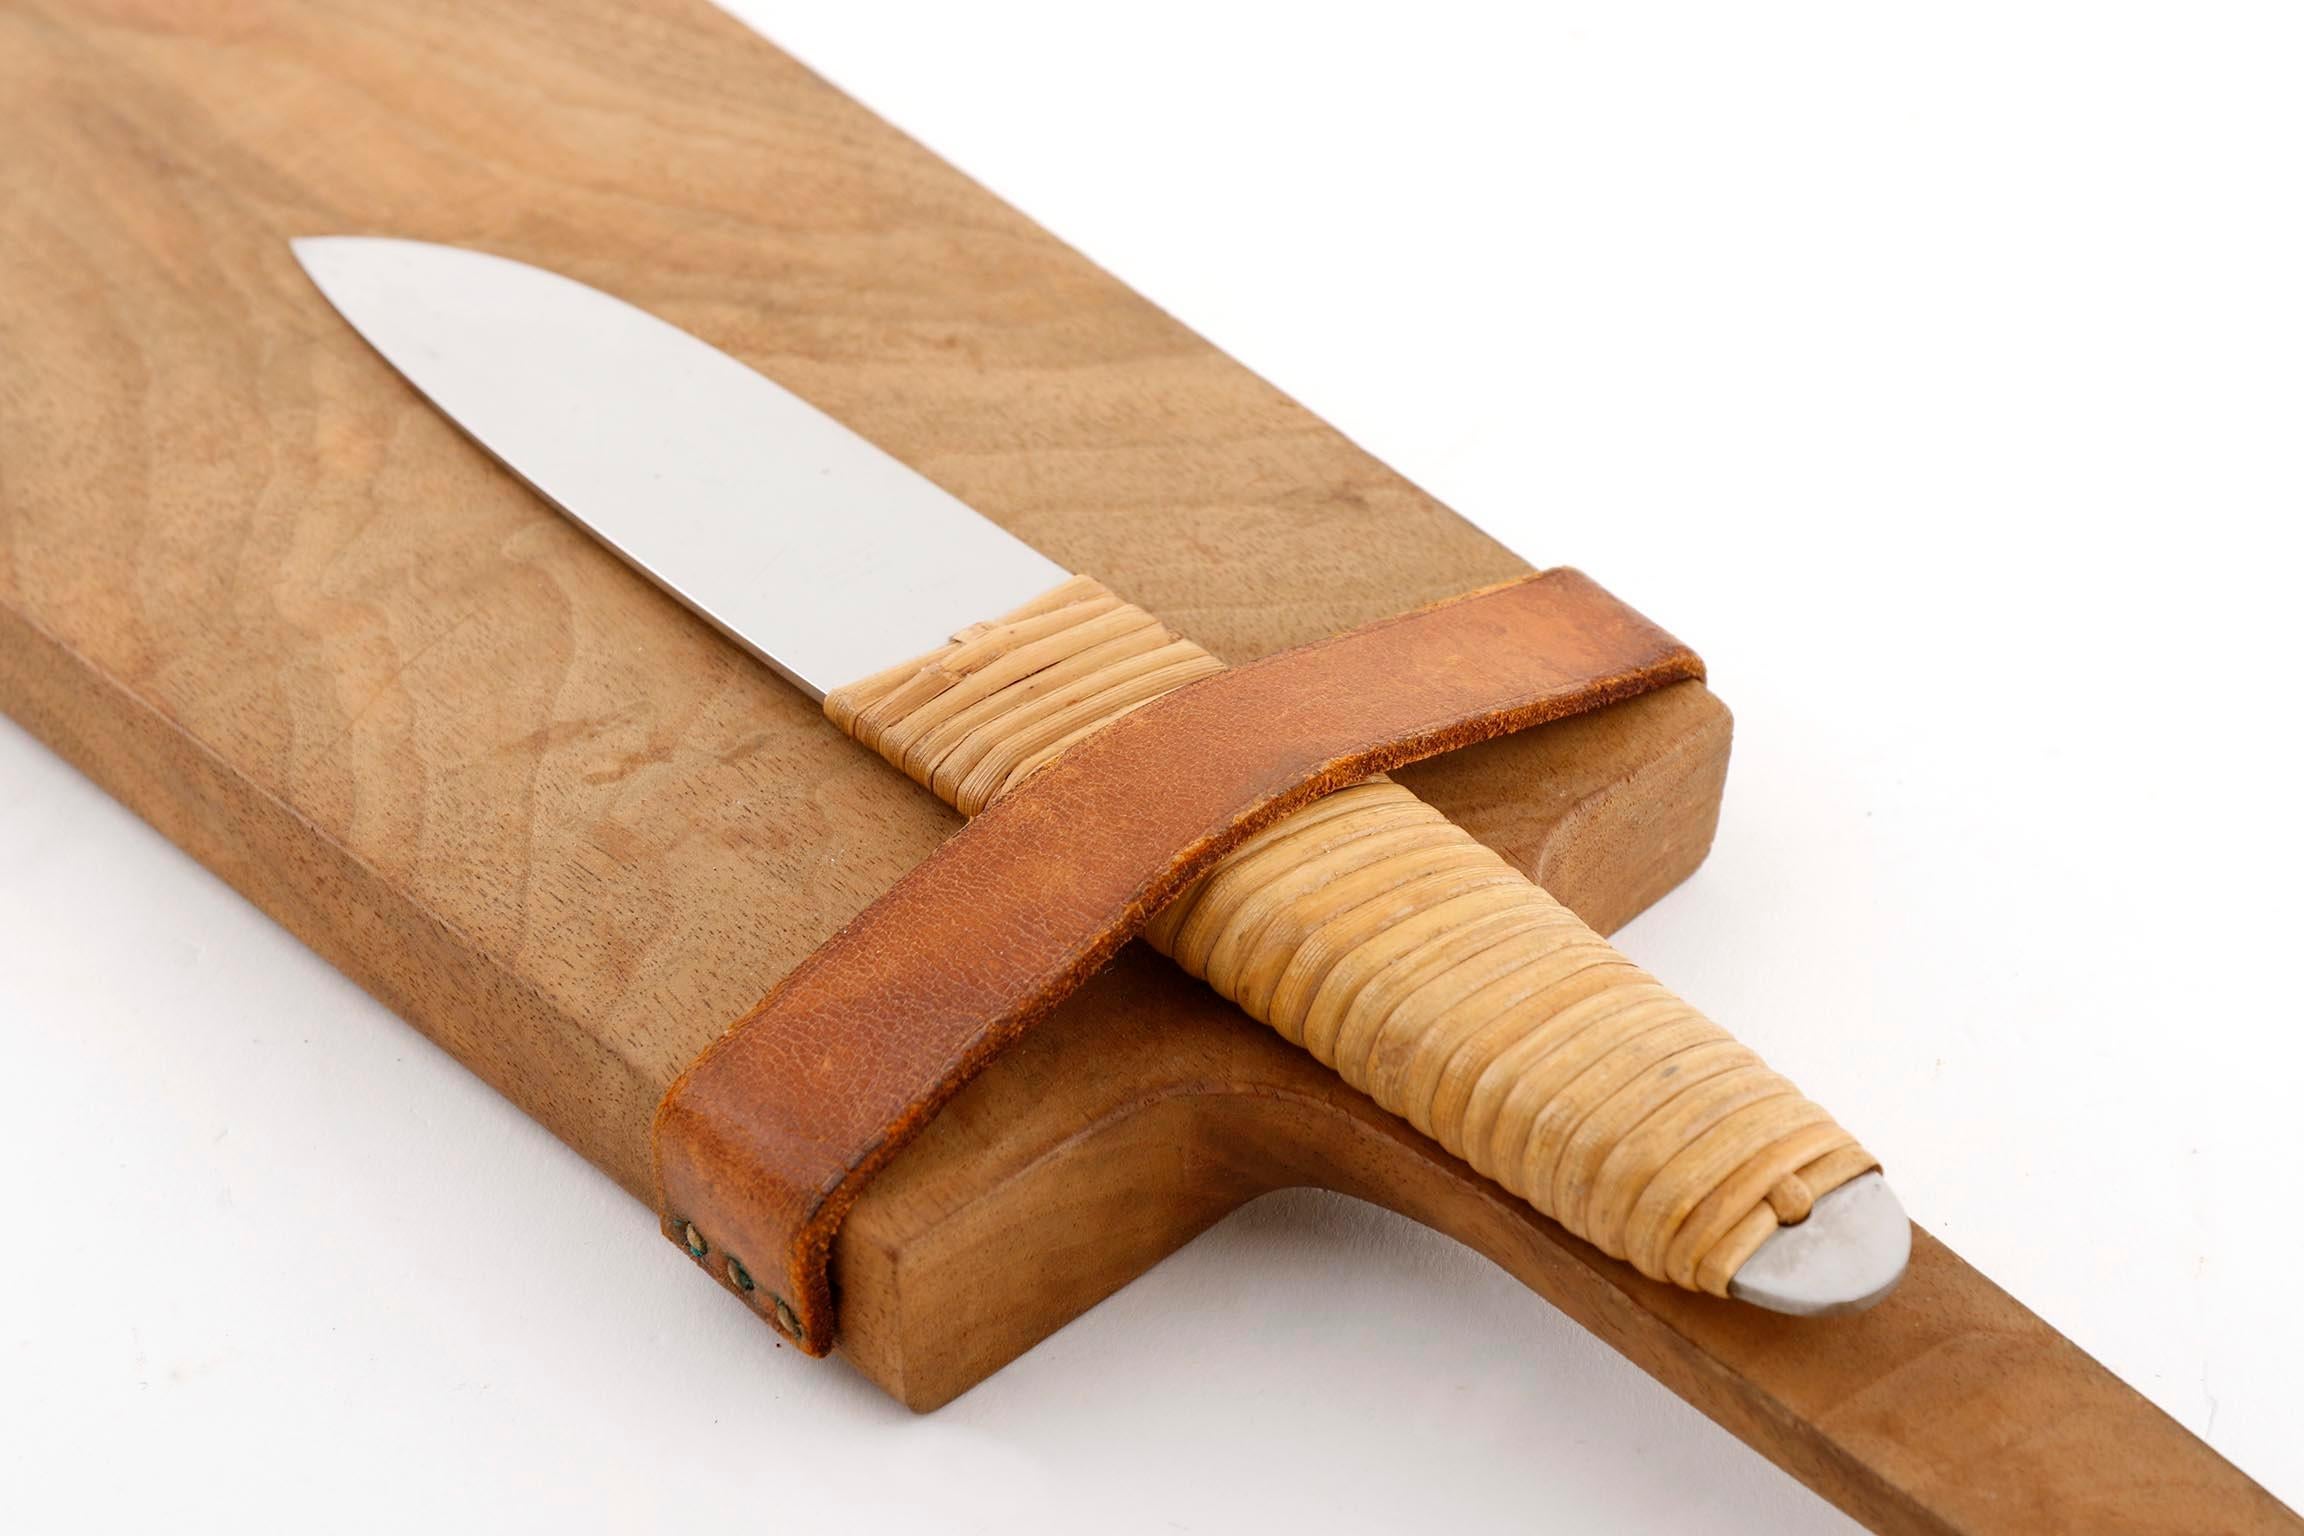 Austrian Carl Auböck Knife Cutting Chopping Board, Wood Wicker Stainless Steel, 1950s